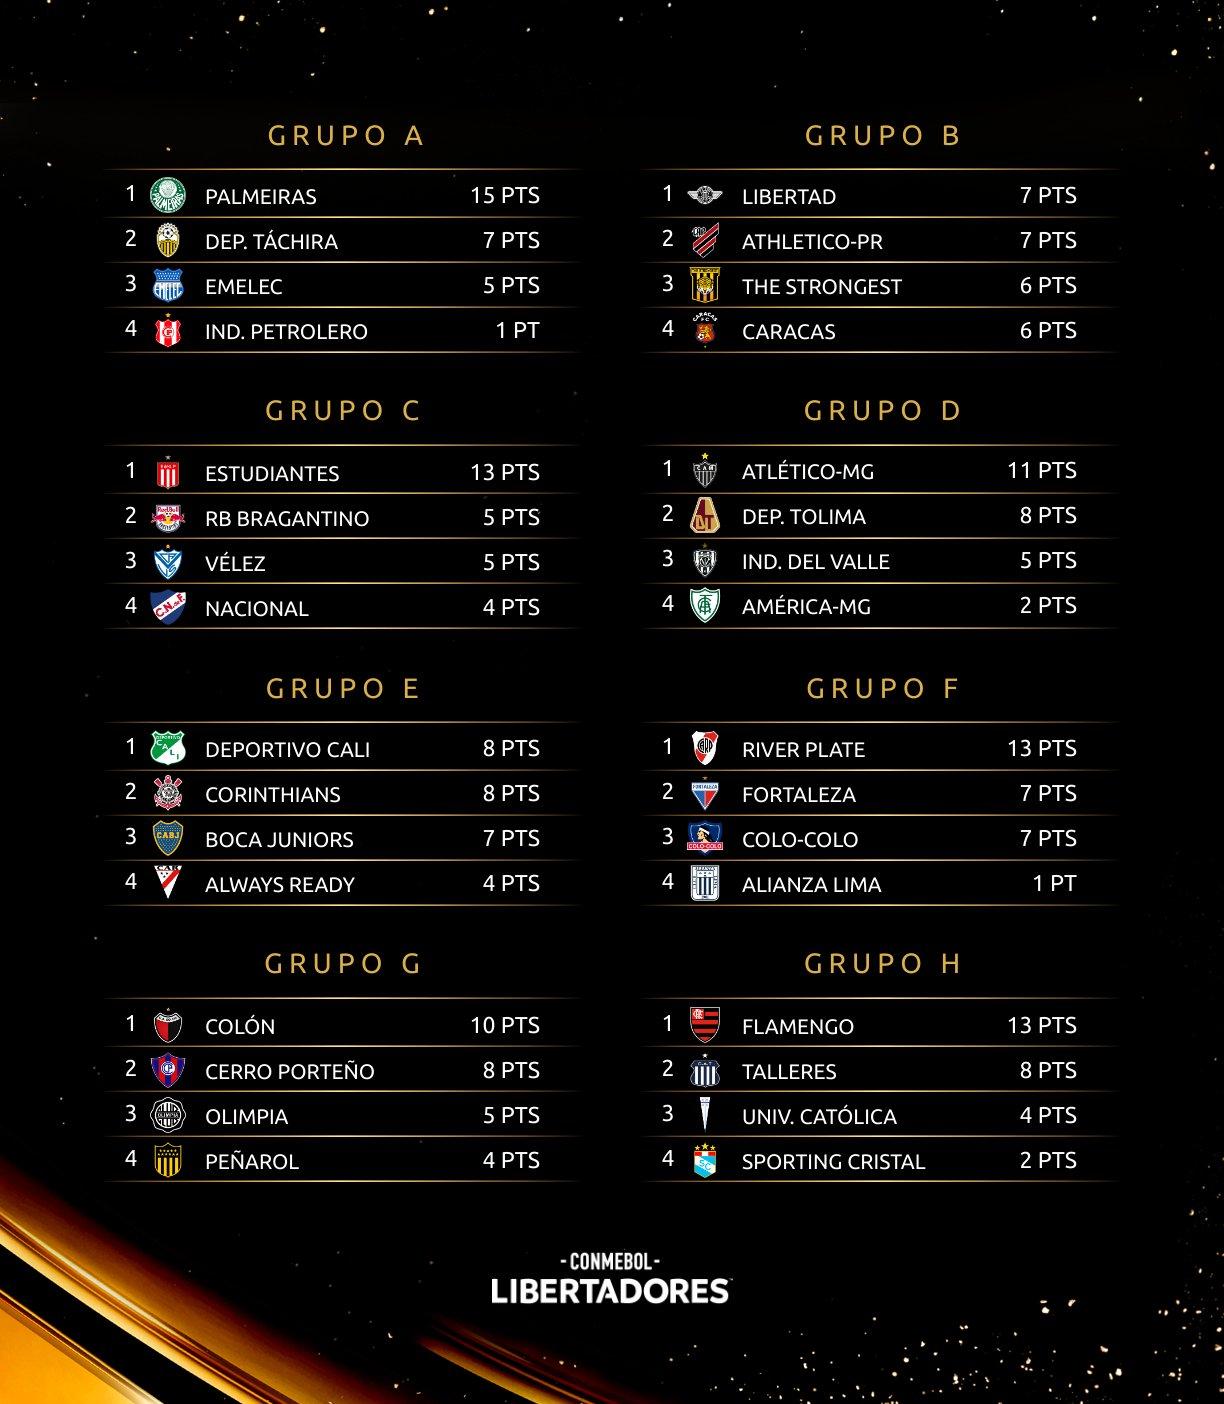 Classificação do returno: liderança é do Atlético-MG, e Fortaleza e  Bragantino também têm 13 pontos, espião estatístico